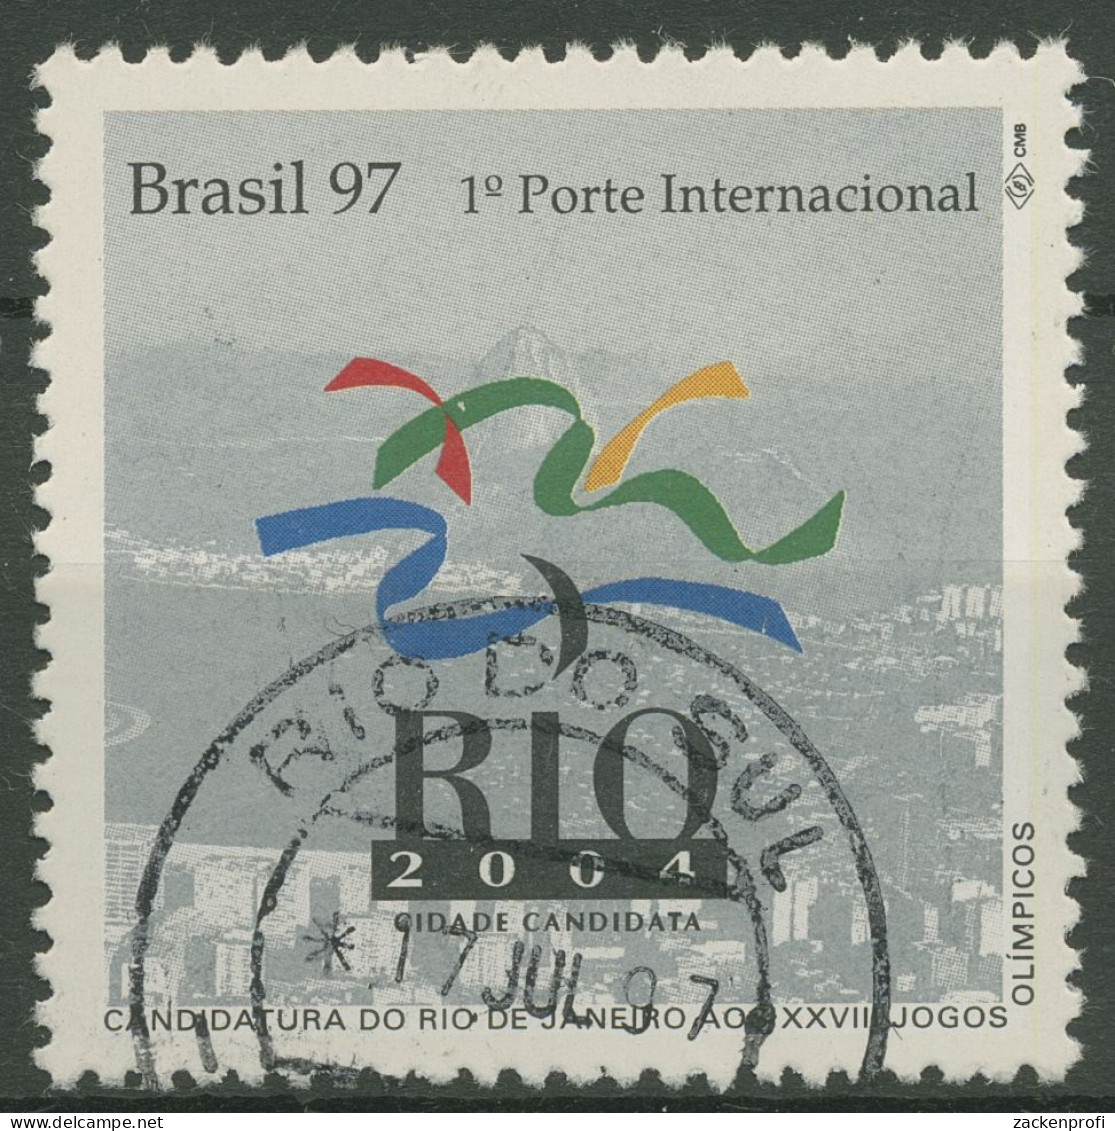 Brasilien 1997 Bewerbung Für 2004 Olympische Sommerspiele 2734 Gestempelt - Usati